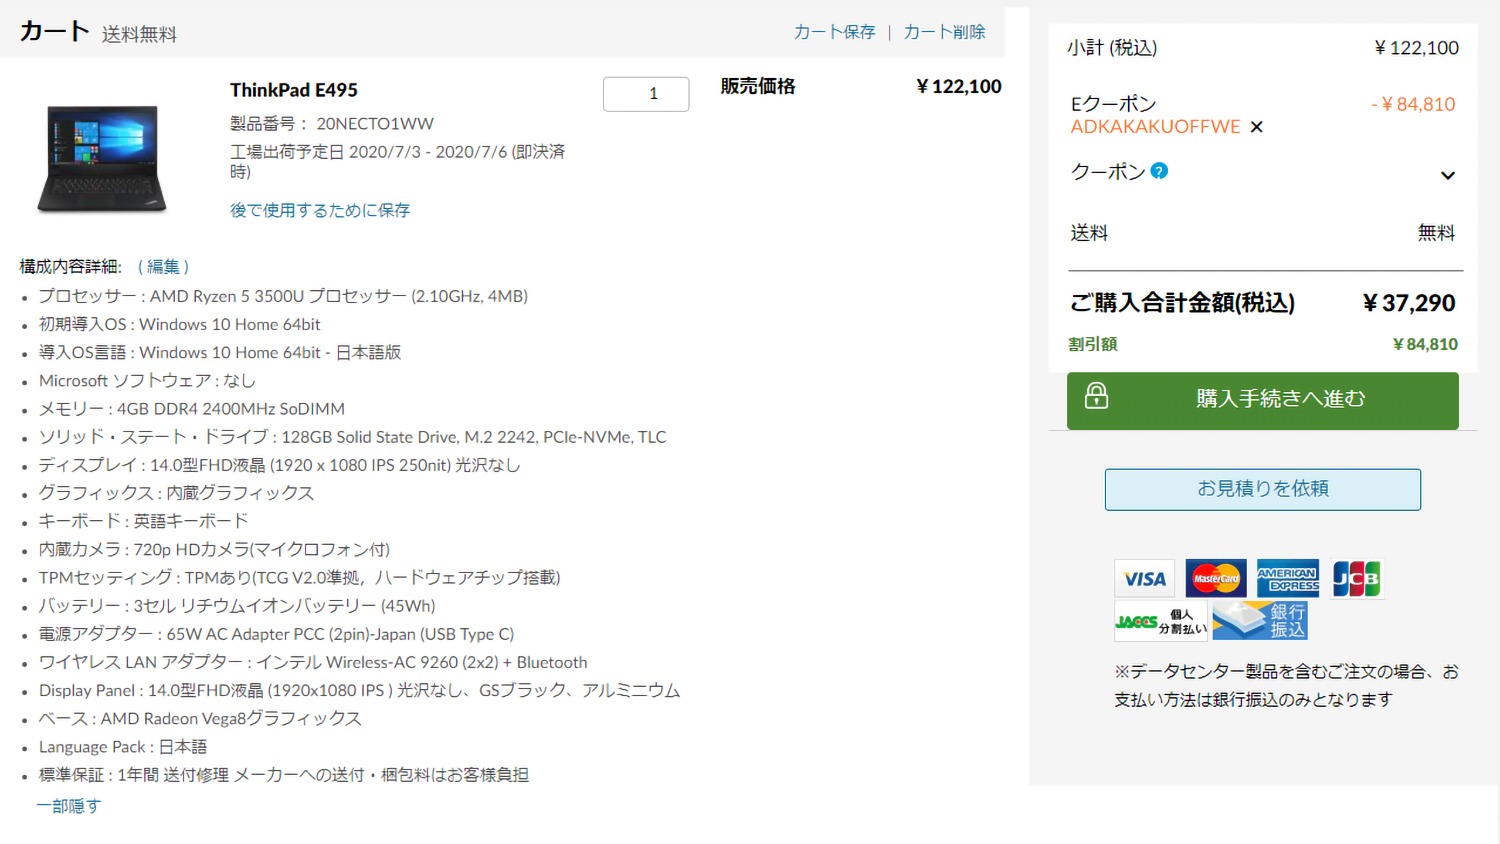 実質3万円以下でThinkPad E495を買った話 | でこにく